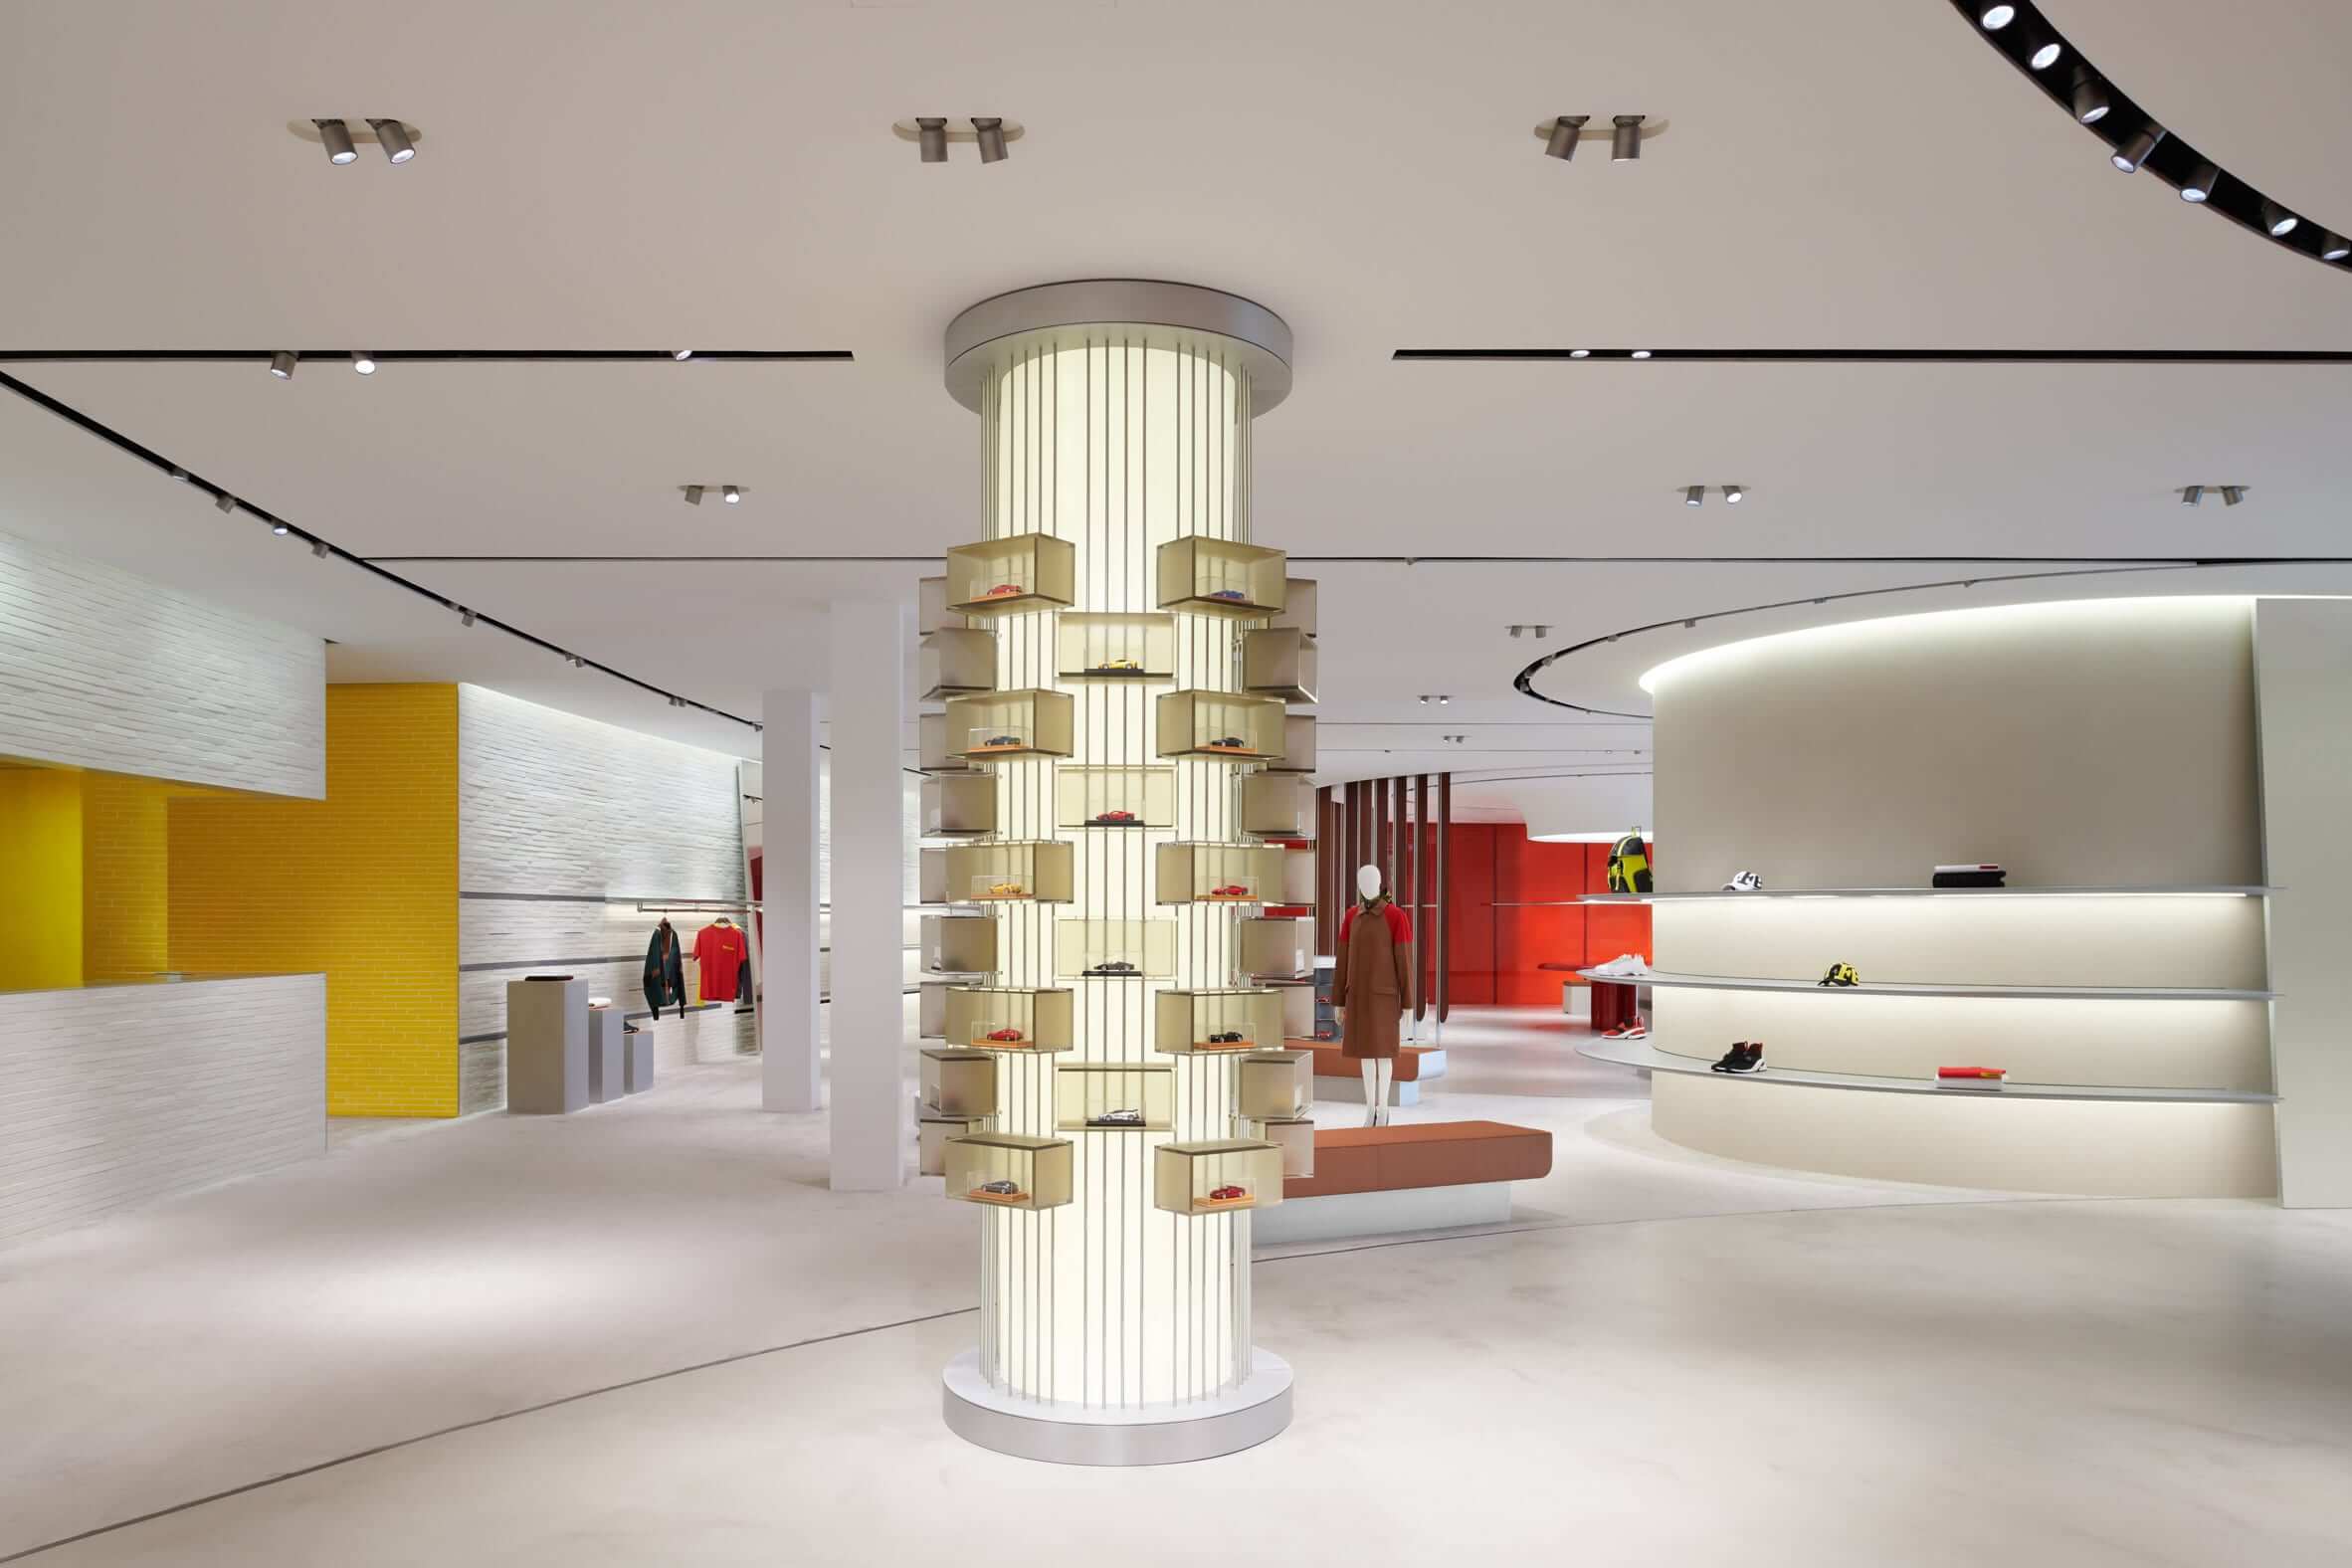 New Ferrari Lifestyle Concept Store in Maranello by Sybarite architecture studio